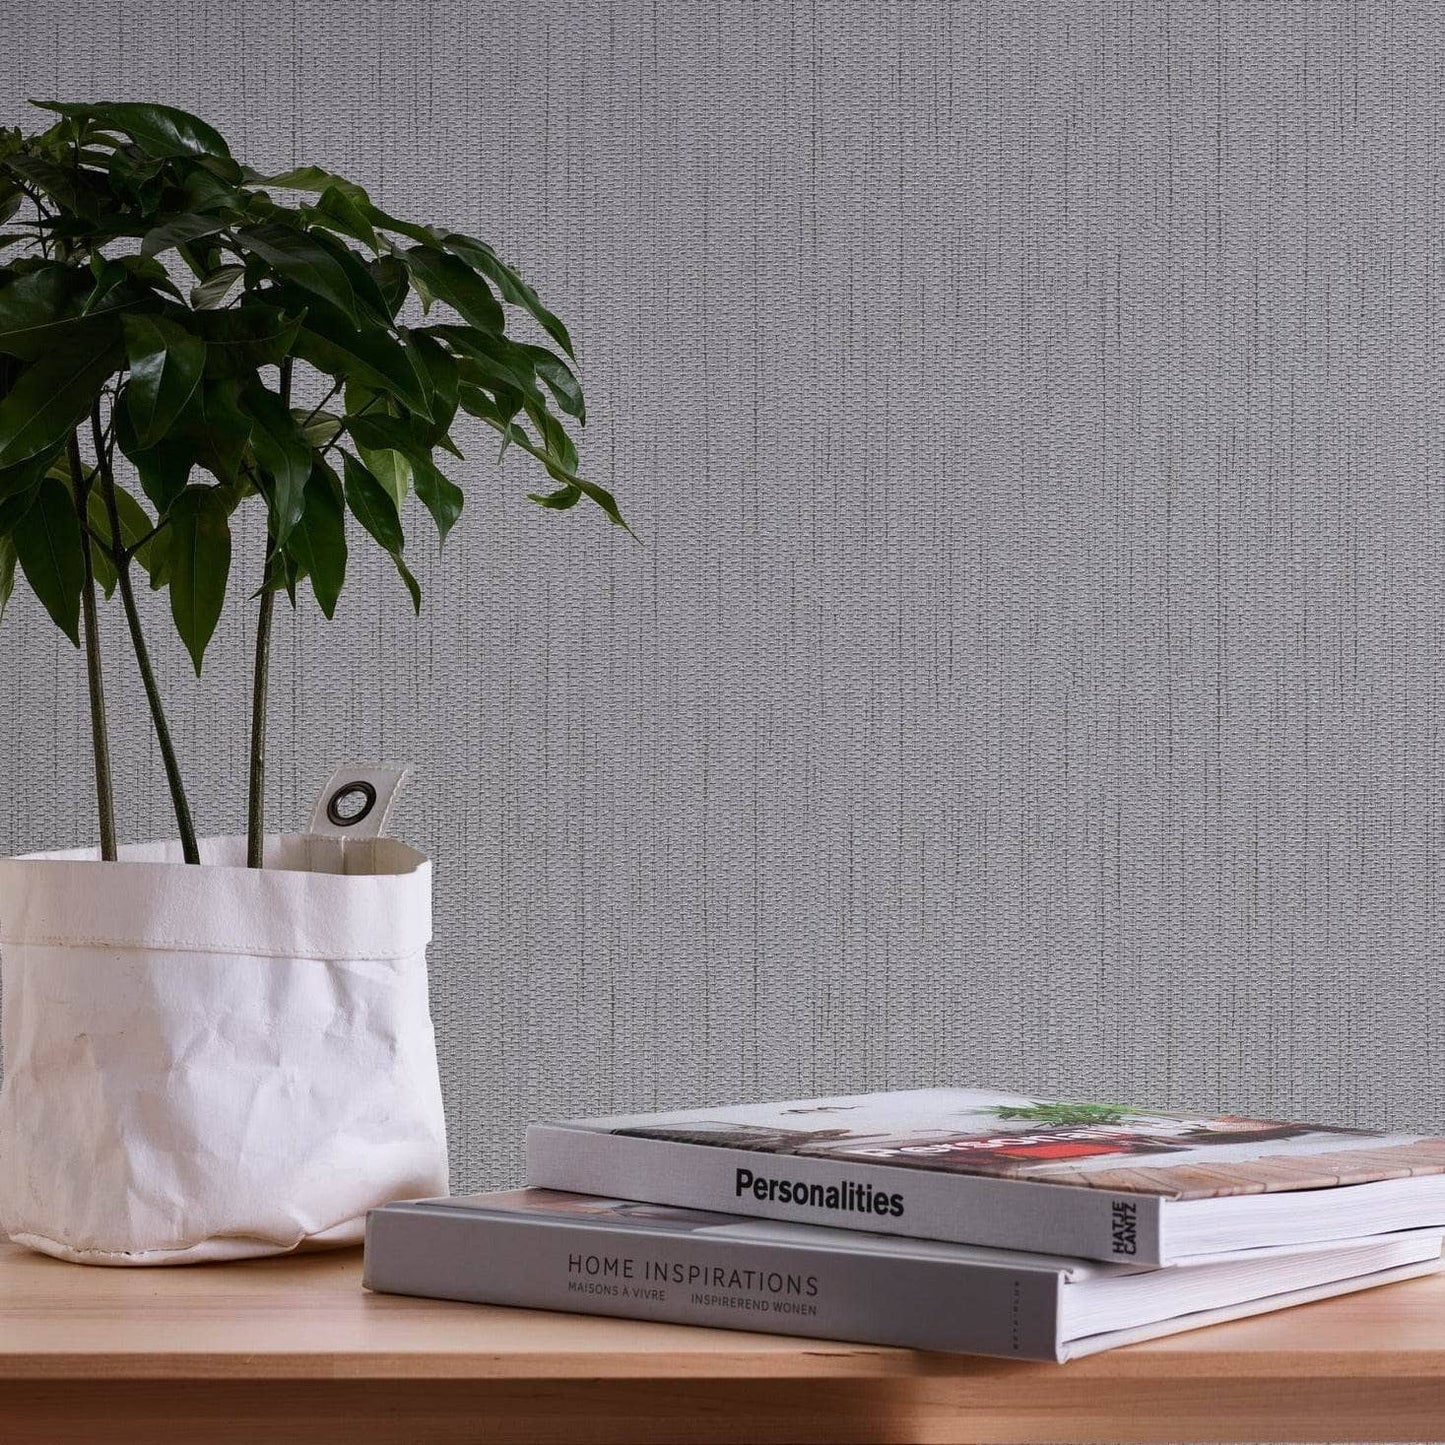 Wallpaper  -  A.S Casual Living Metallic Grey Wallpaper - 344328  -  60009471